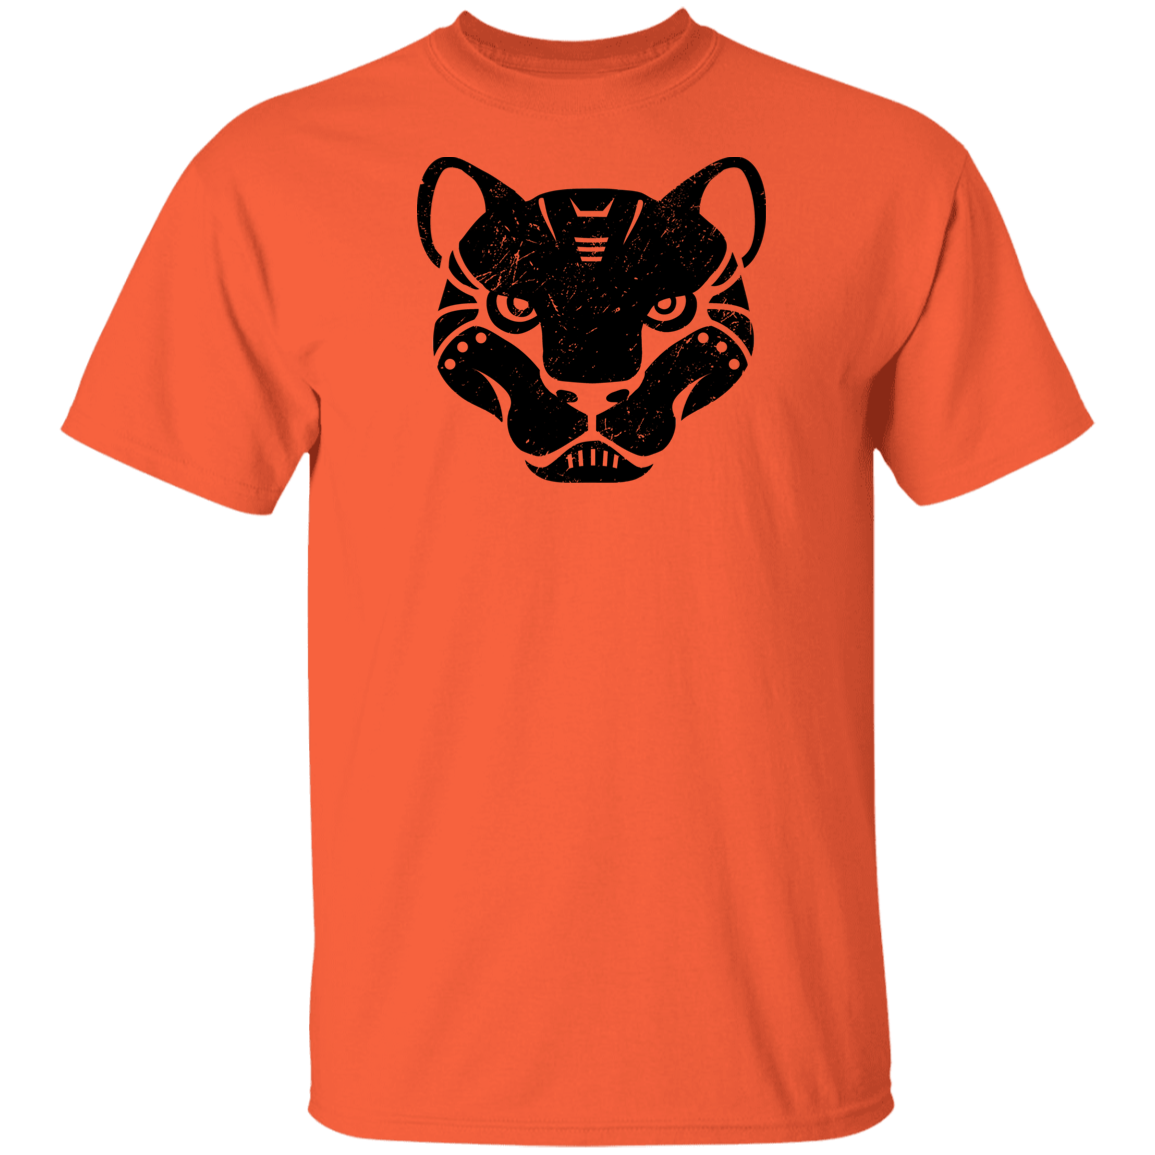 Black Distressed Emblem T-Shirt for Kids (Panther/Slash)